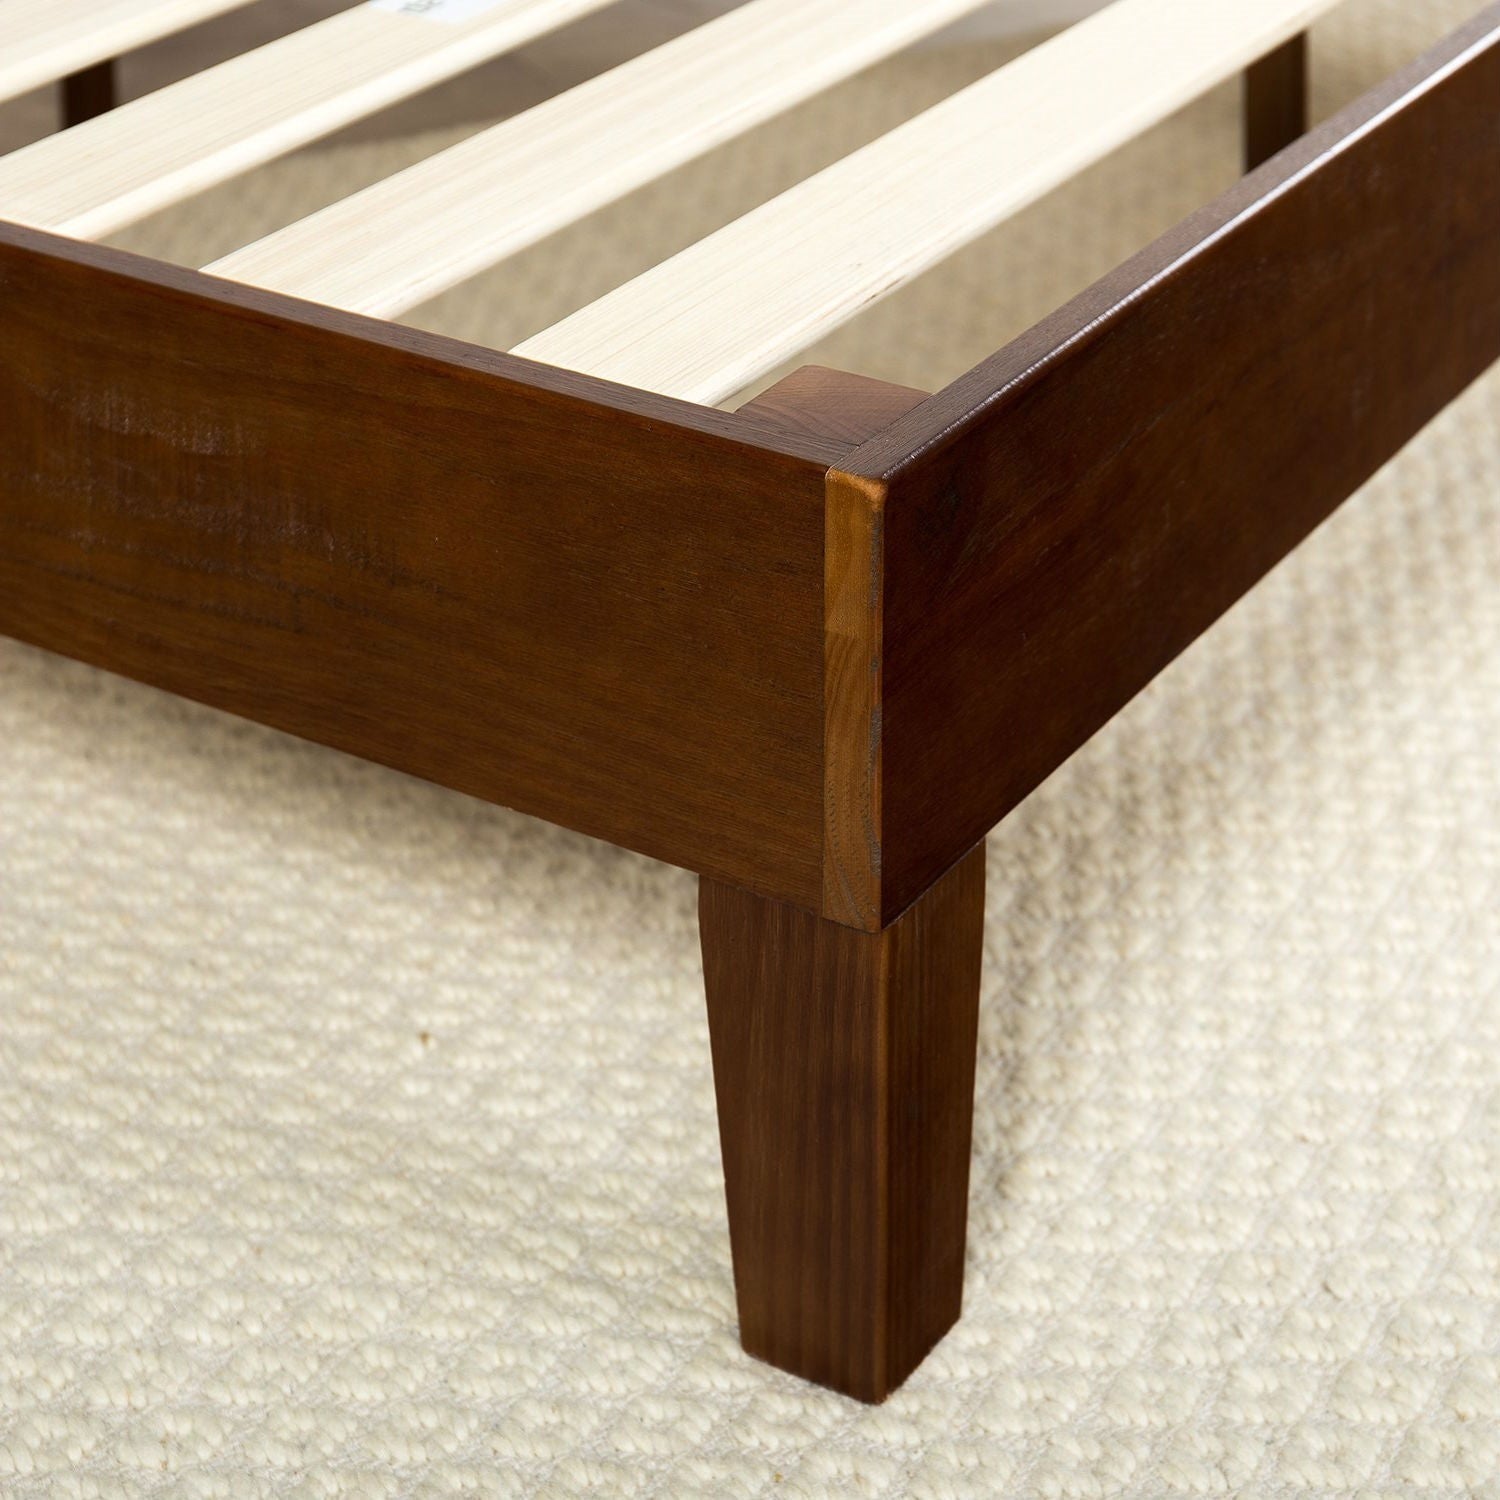 Bedroom > Bed Frames > Platform Beds - Full Size Low Profile Solid Wood Platform Bed Frame In Espresso Finish